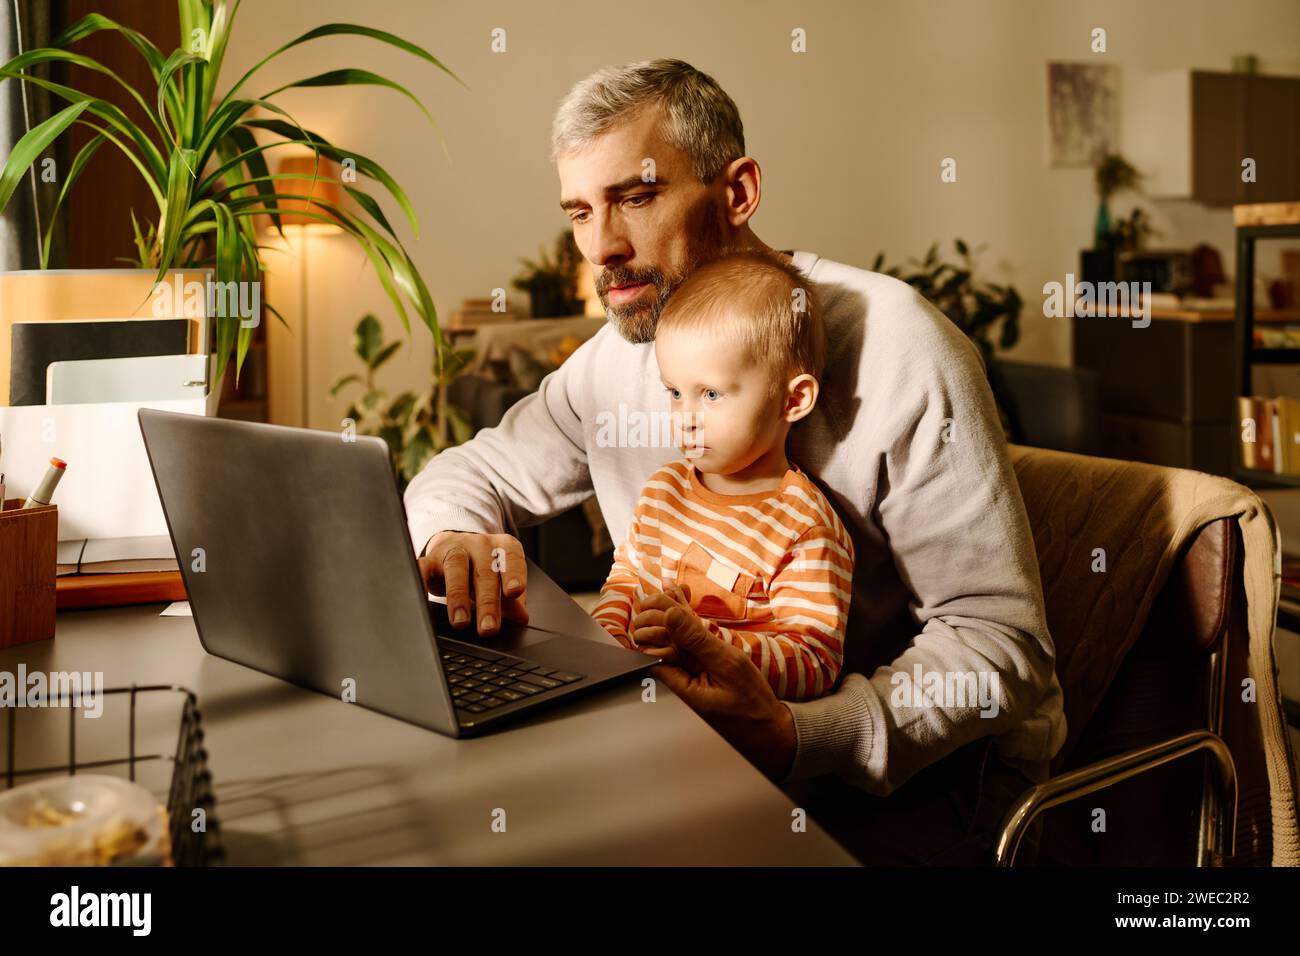 Reifer Home Office Manager oder Solopreneur mit seinem kleinen Sohn, der während des Netzwerks oder beim Ansehen von Online-Videos auf den Laptop-Bildschirm schaut Stockfoto